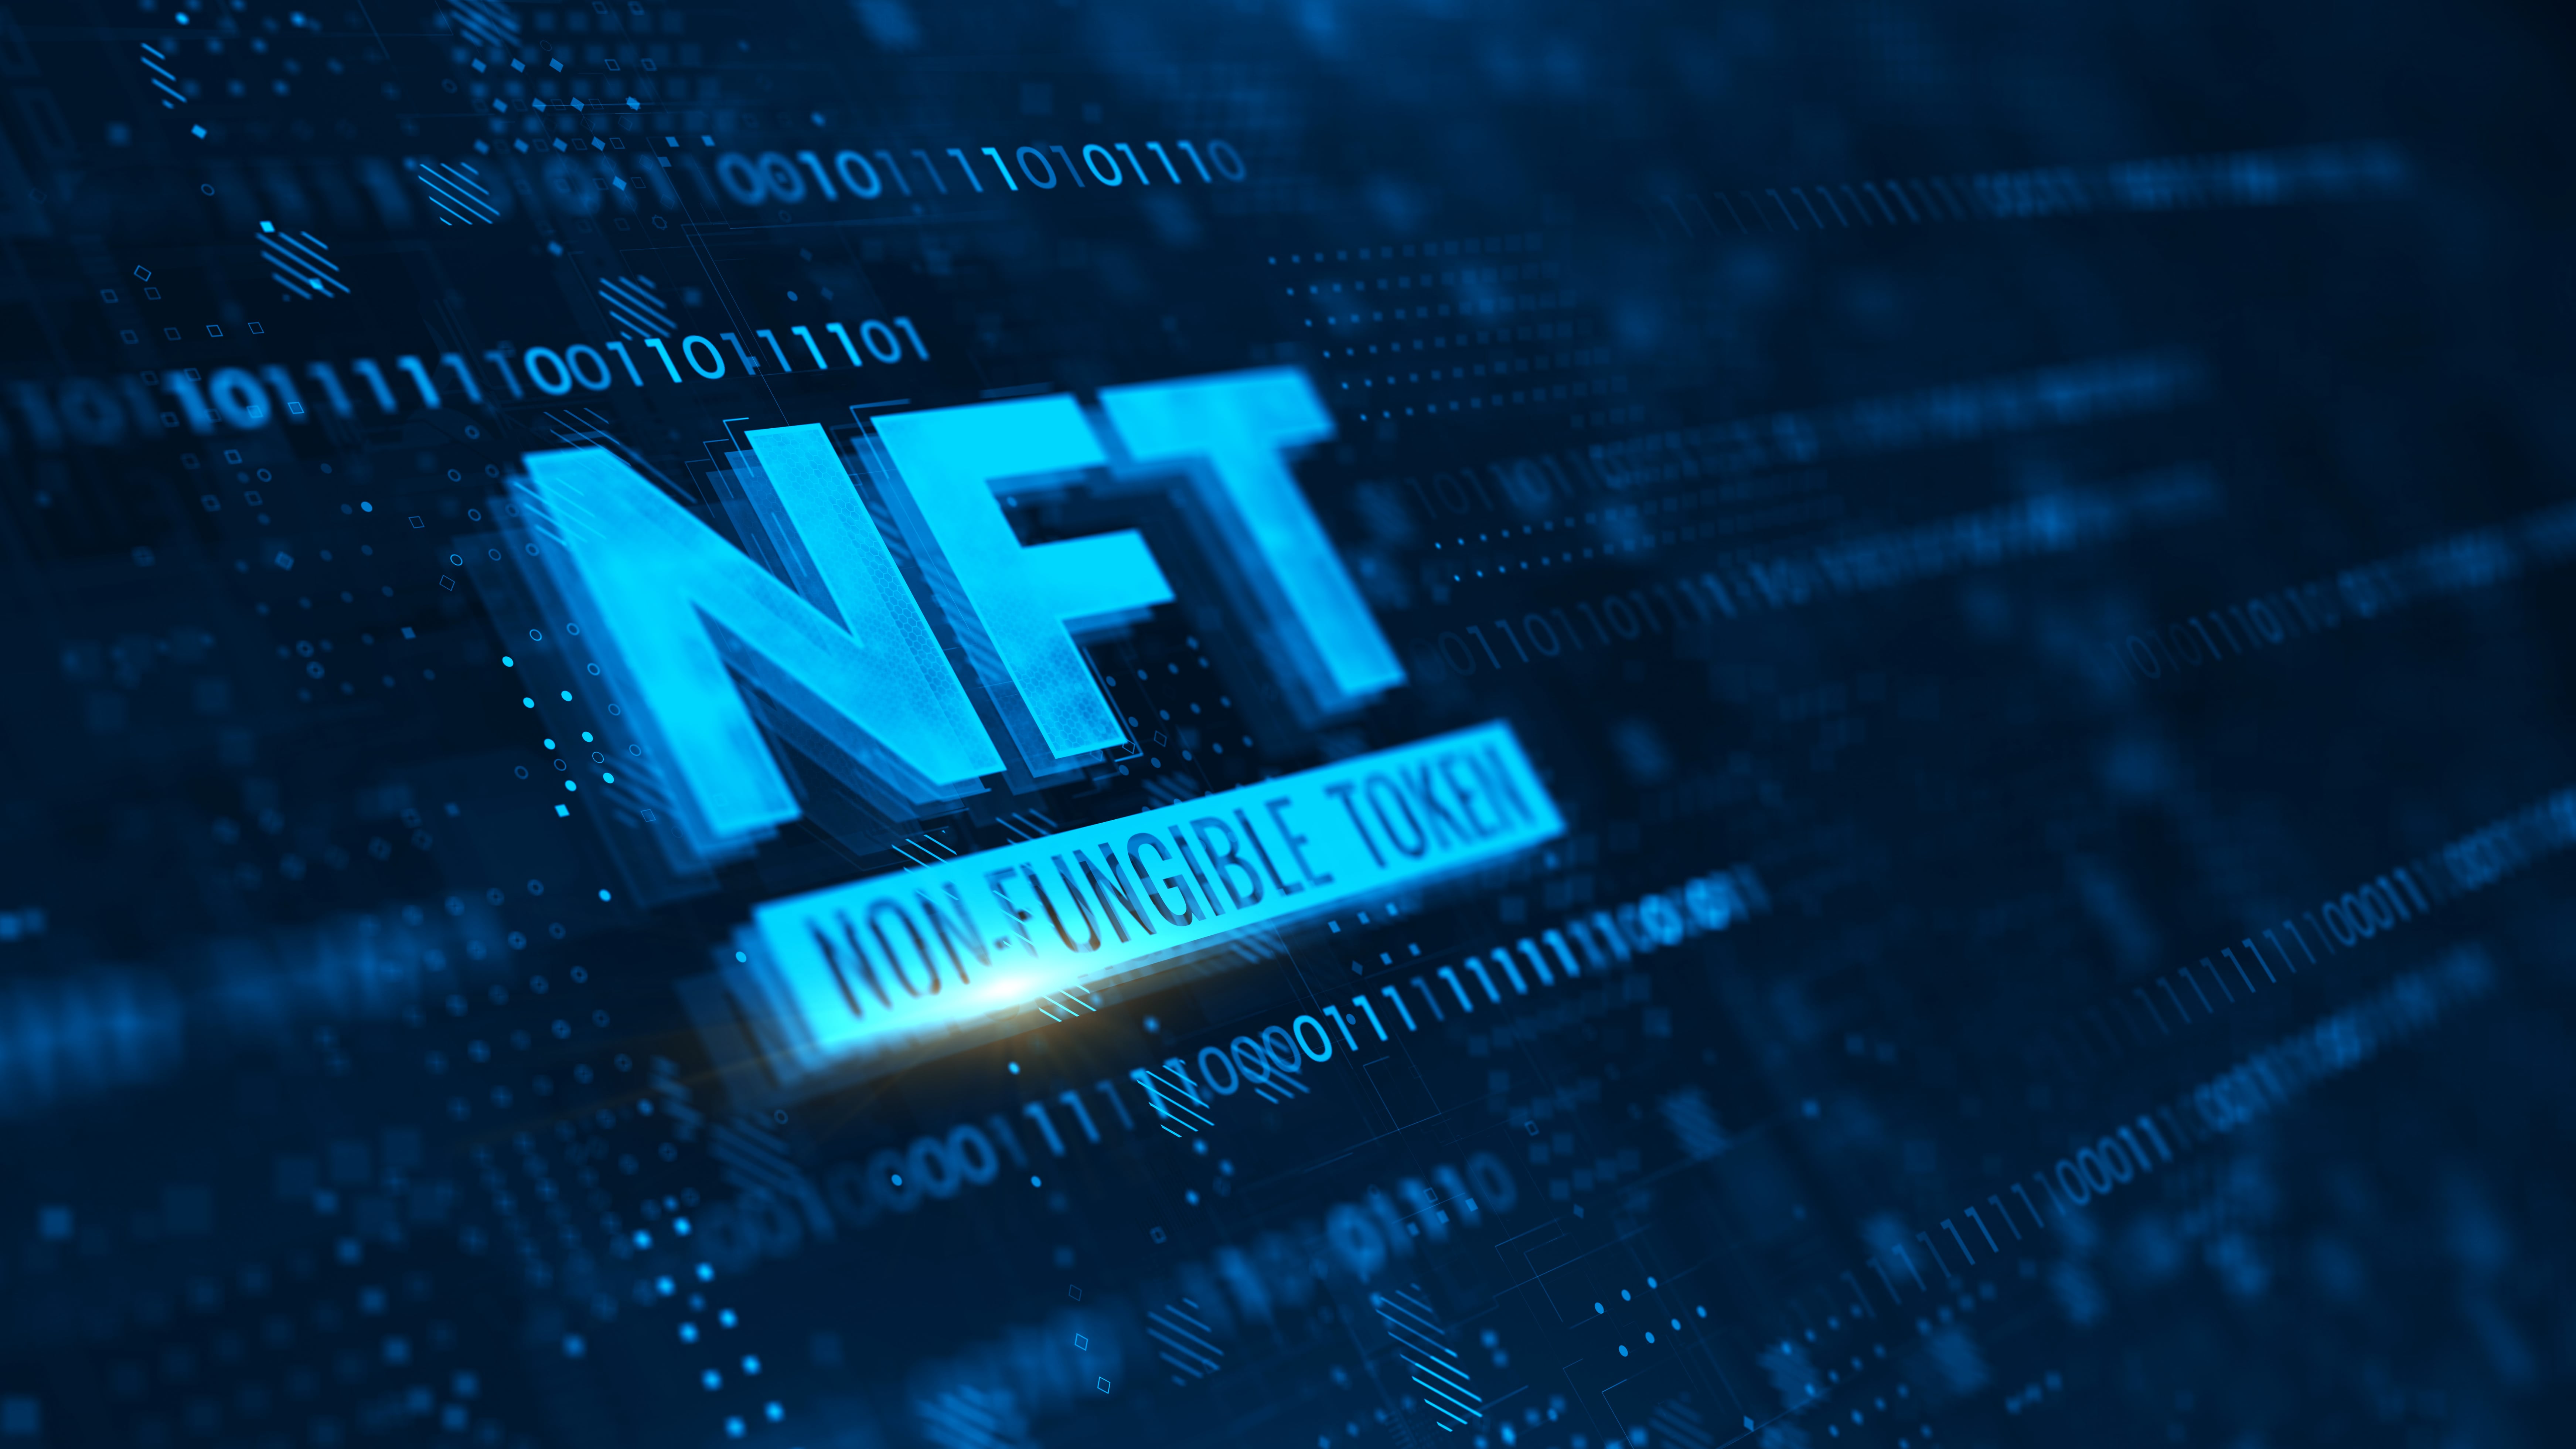 Penyerang dapat mengungkapkan identitas mereka yang menggunakan pasar NFT terbesar, demikian temuan penelitian